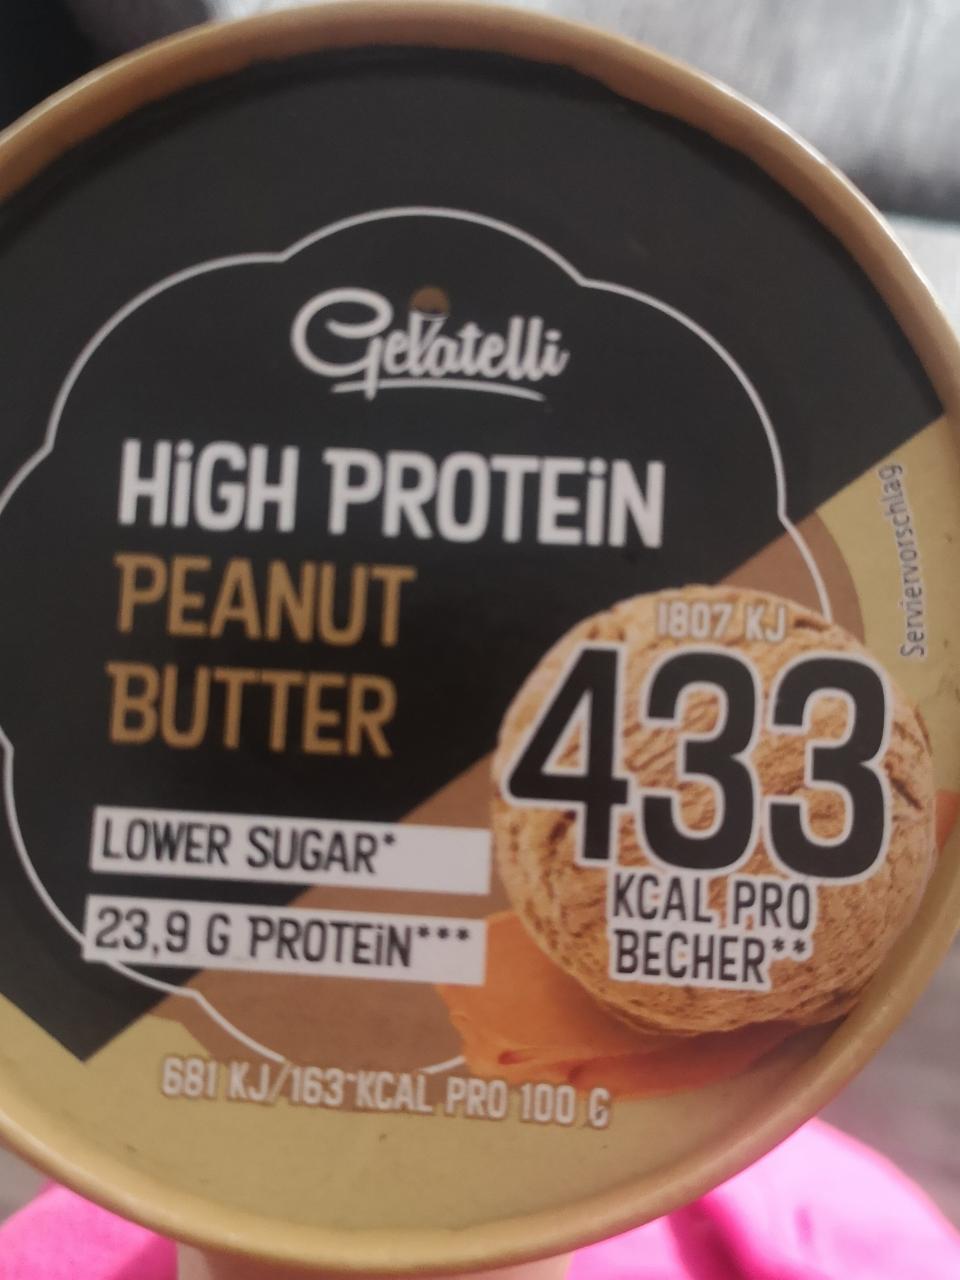 Fotografie - High Protein Peanut Butter Gelatelli